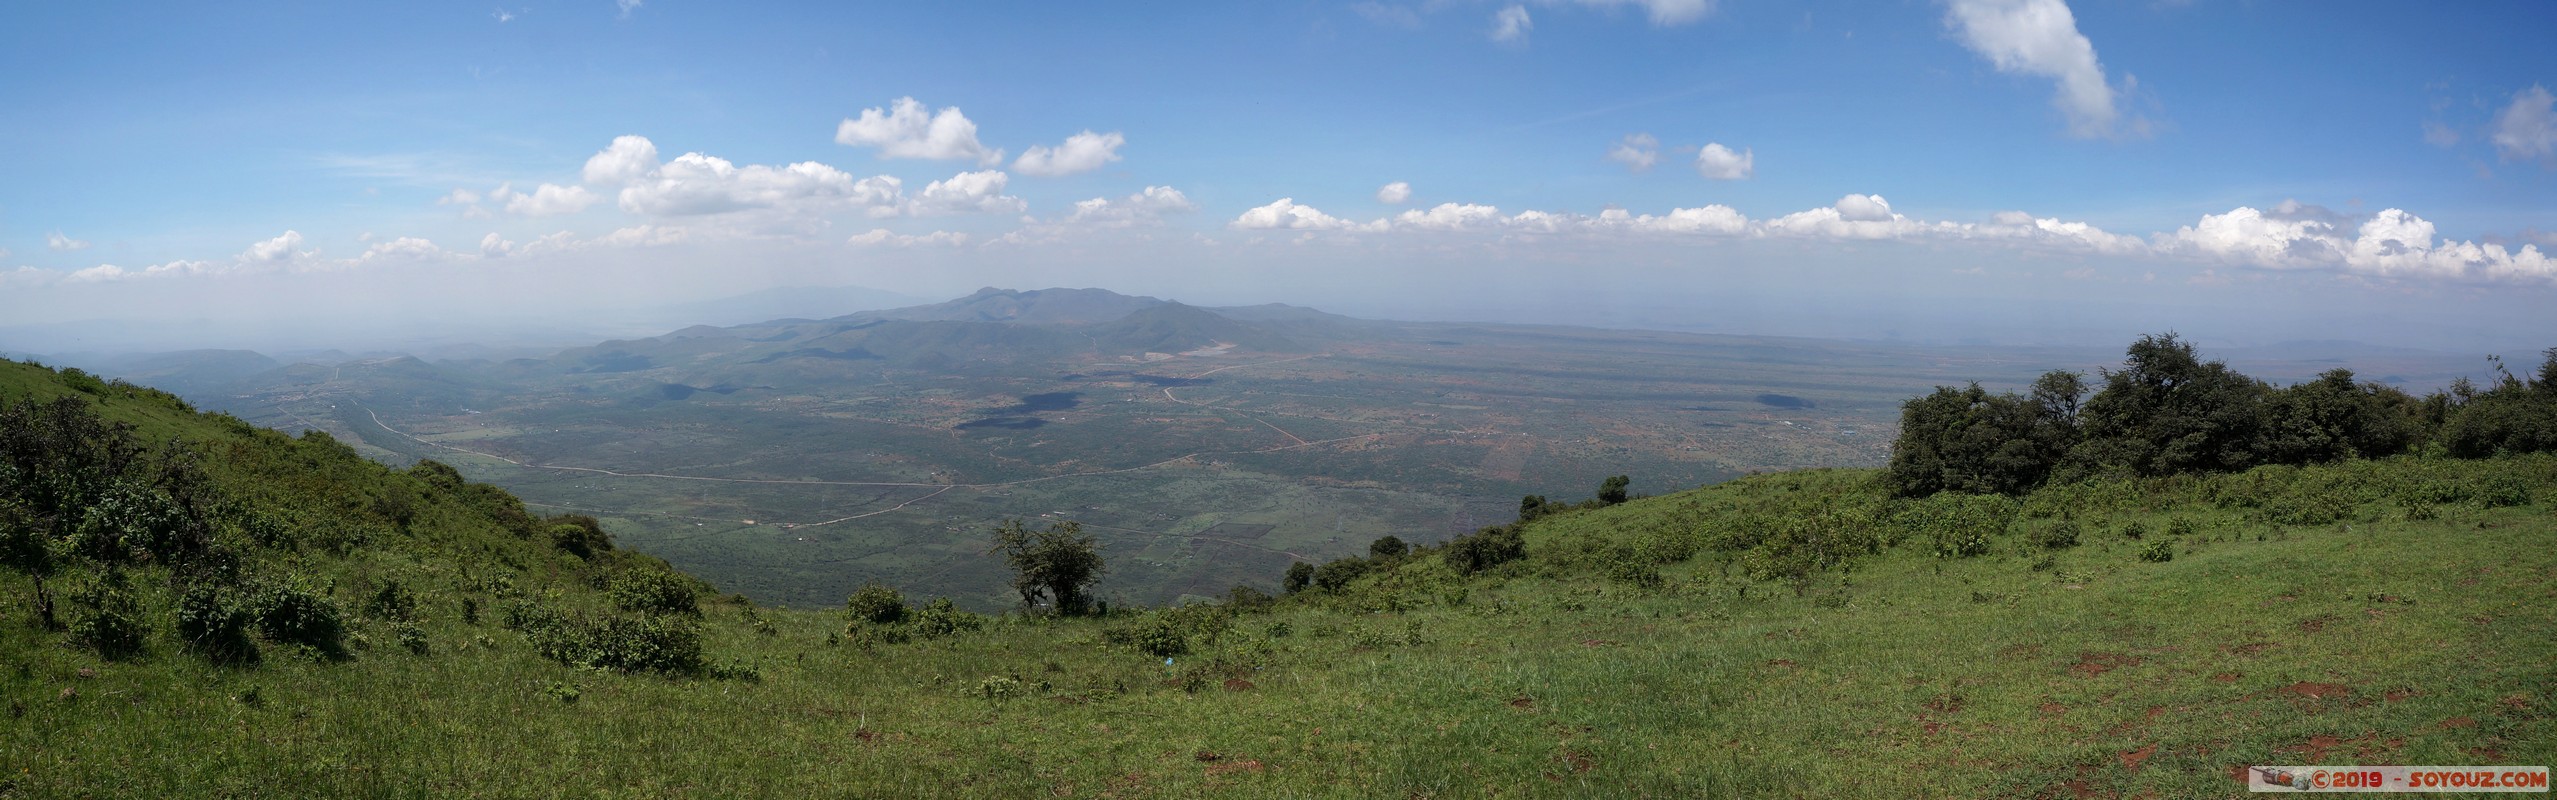 Ngong Hills - Panorama
Mots-clés: Kajiado KEN Kenya Olosho-Oibok Ngong Hills panorama